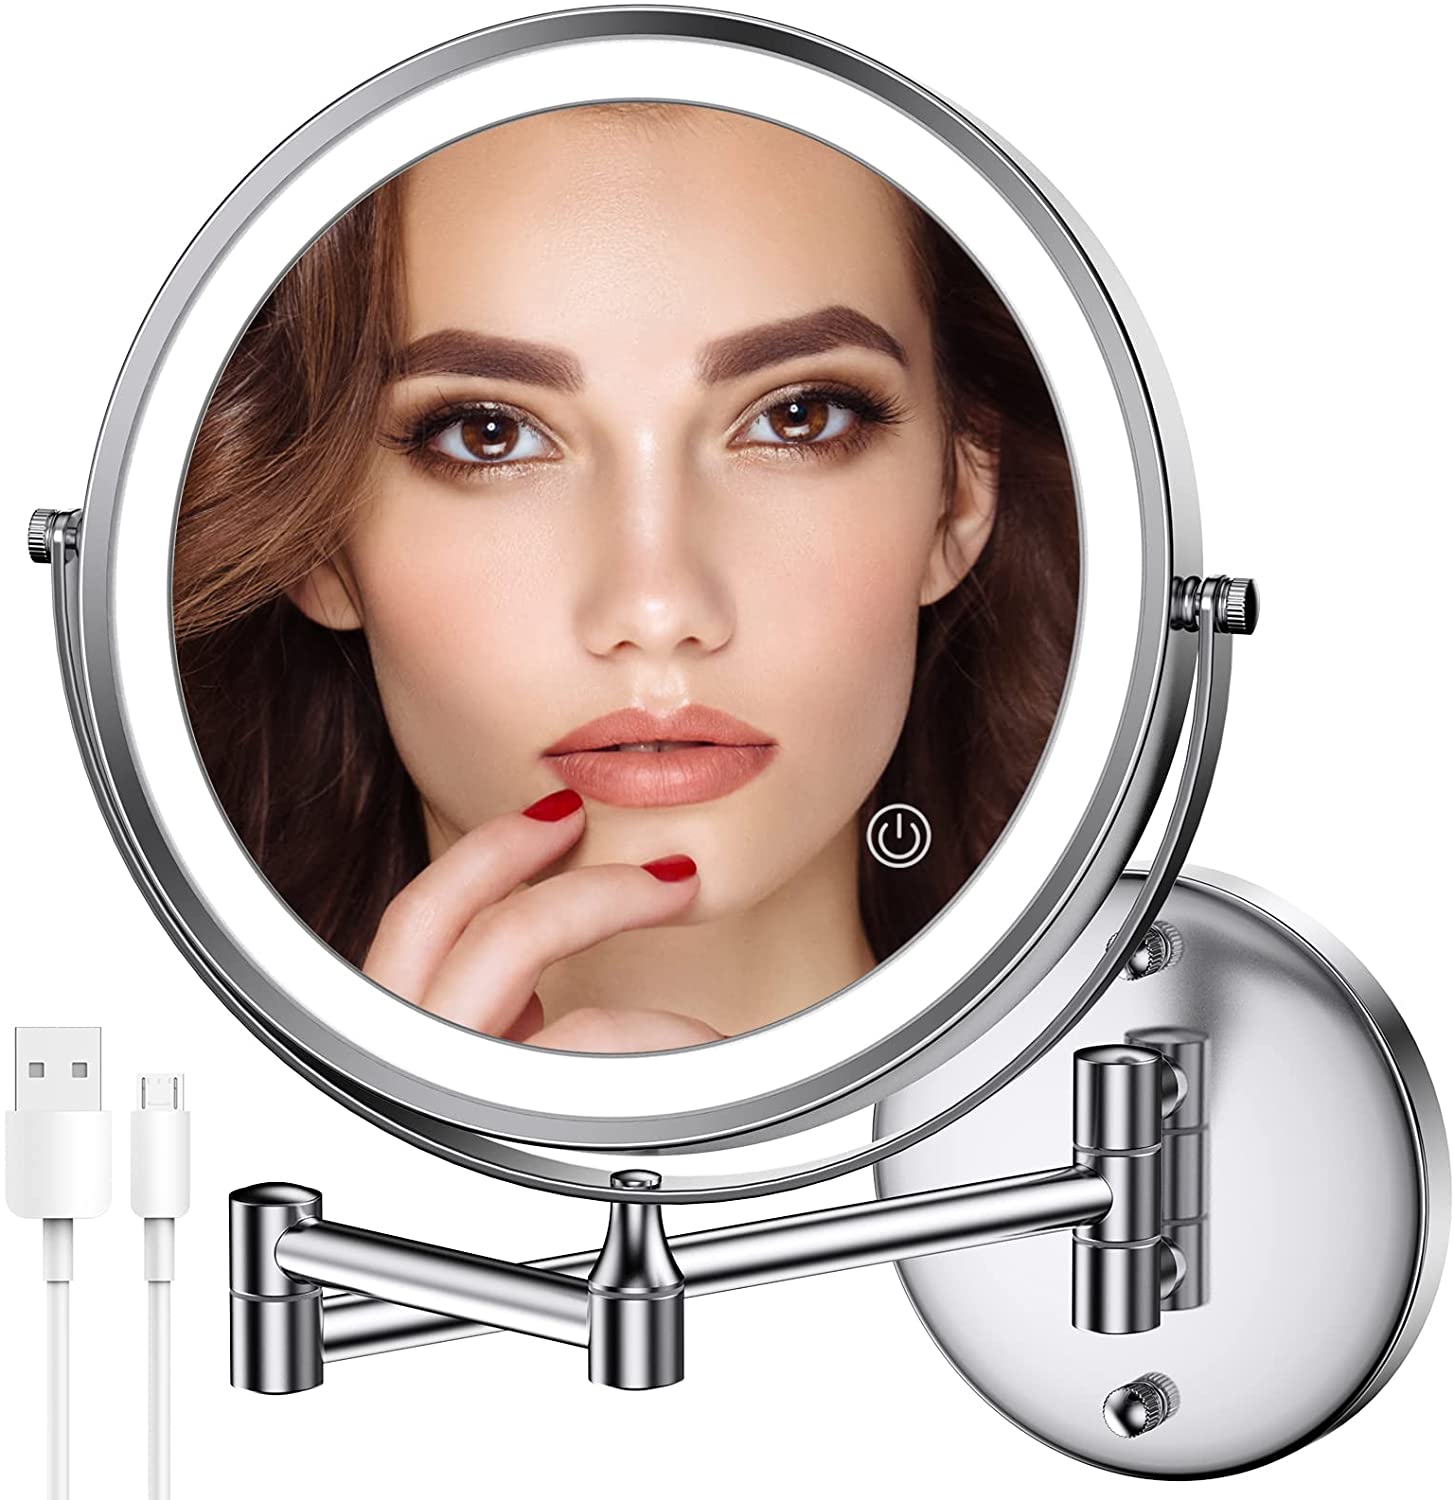 Espejo de maquillaje montado en la pared, espejo de aumento de doble cara  1x/10x, espejo de tocador de 8 pulgadas, espejo de pared de brazo  extensible